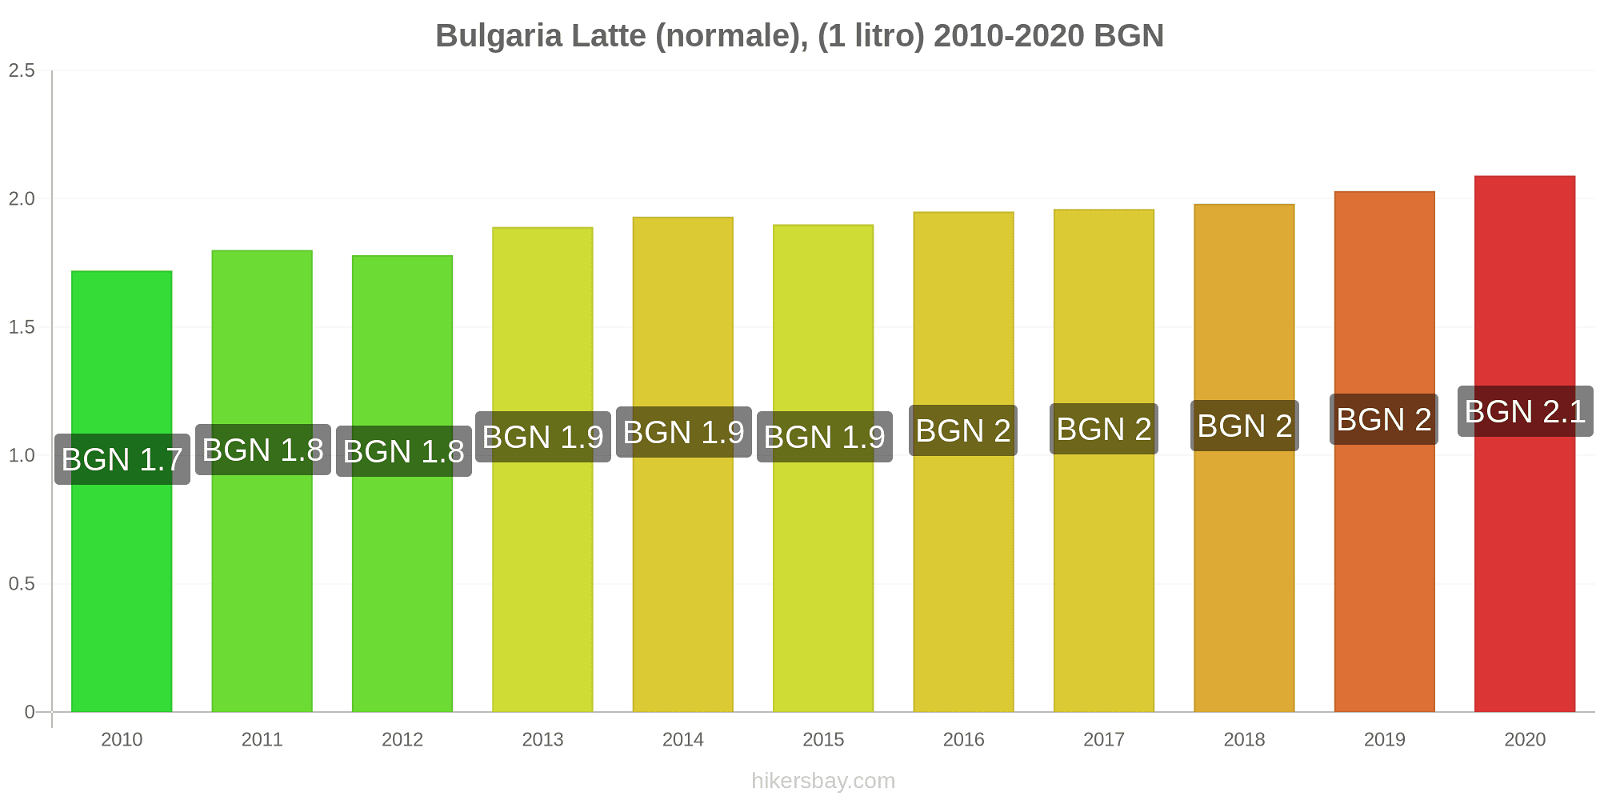 Bulgaria variazioni di prezzo Latte (1 litro) hikersbay.com